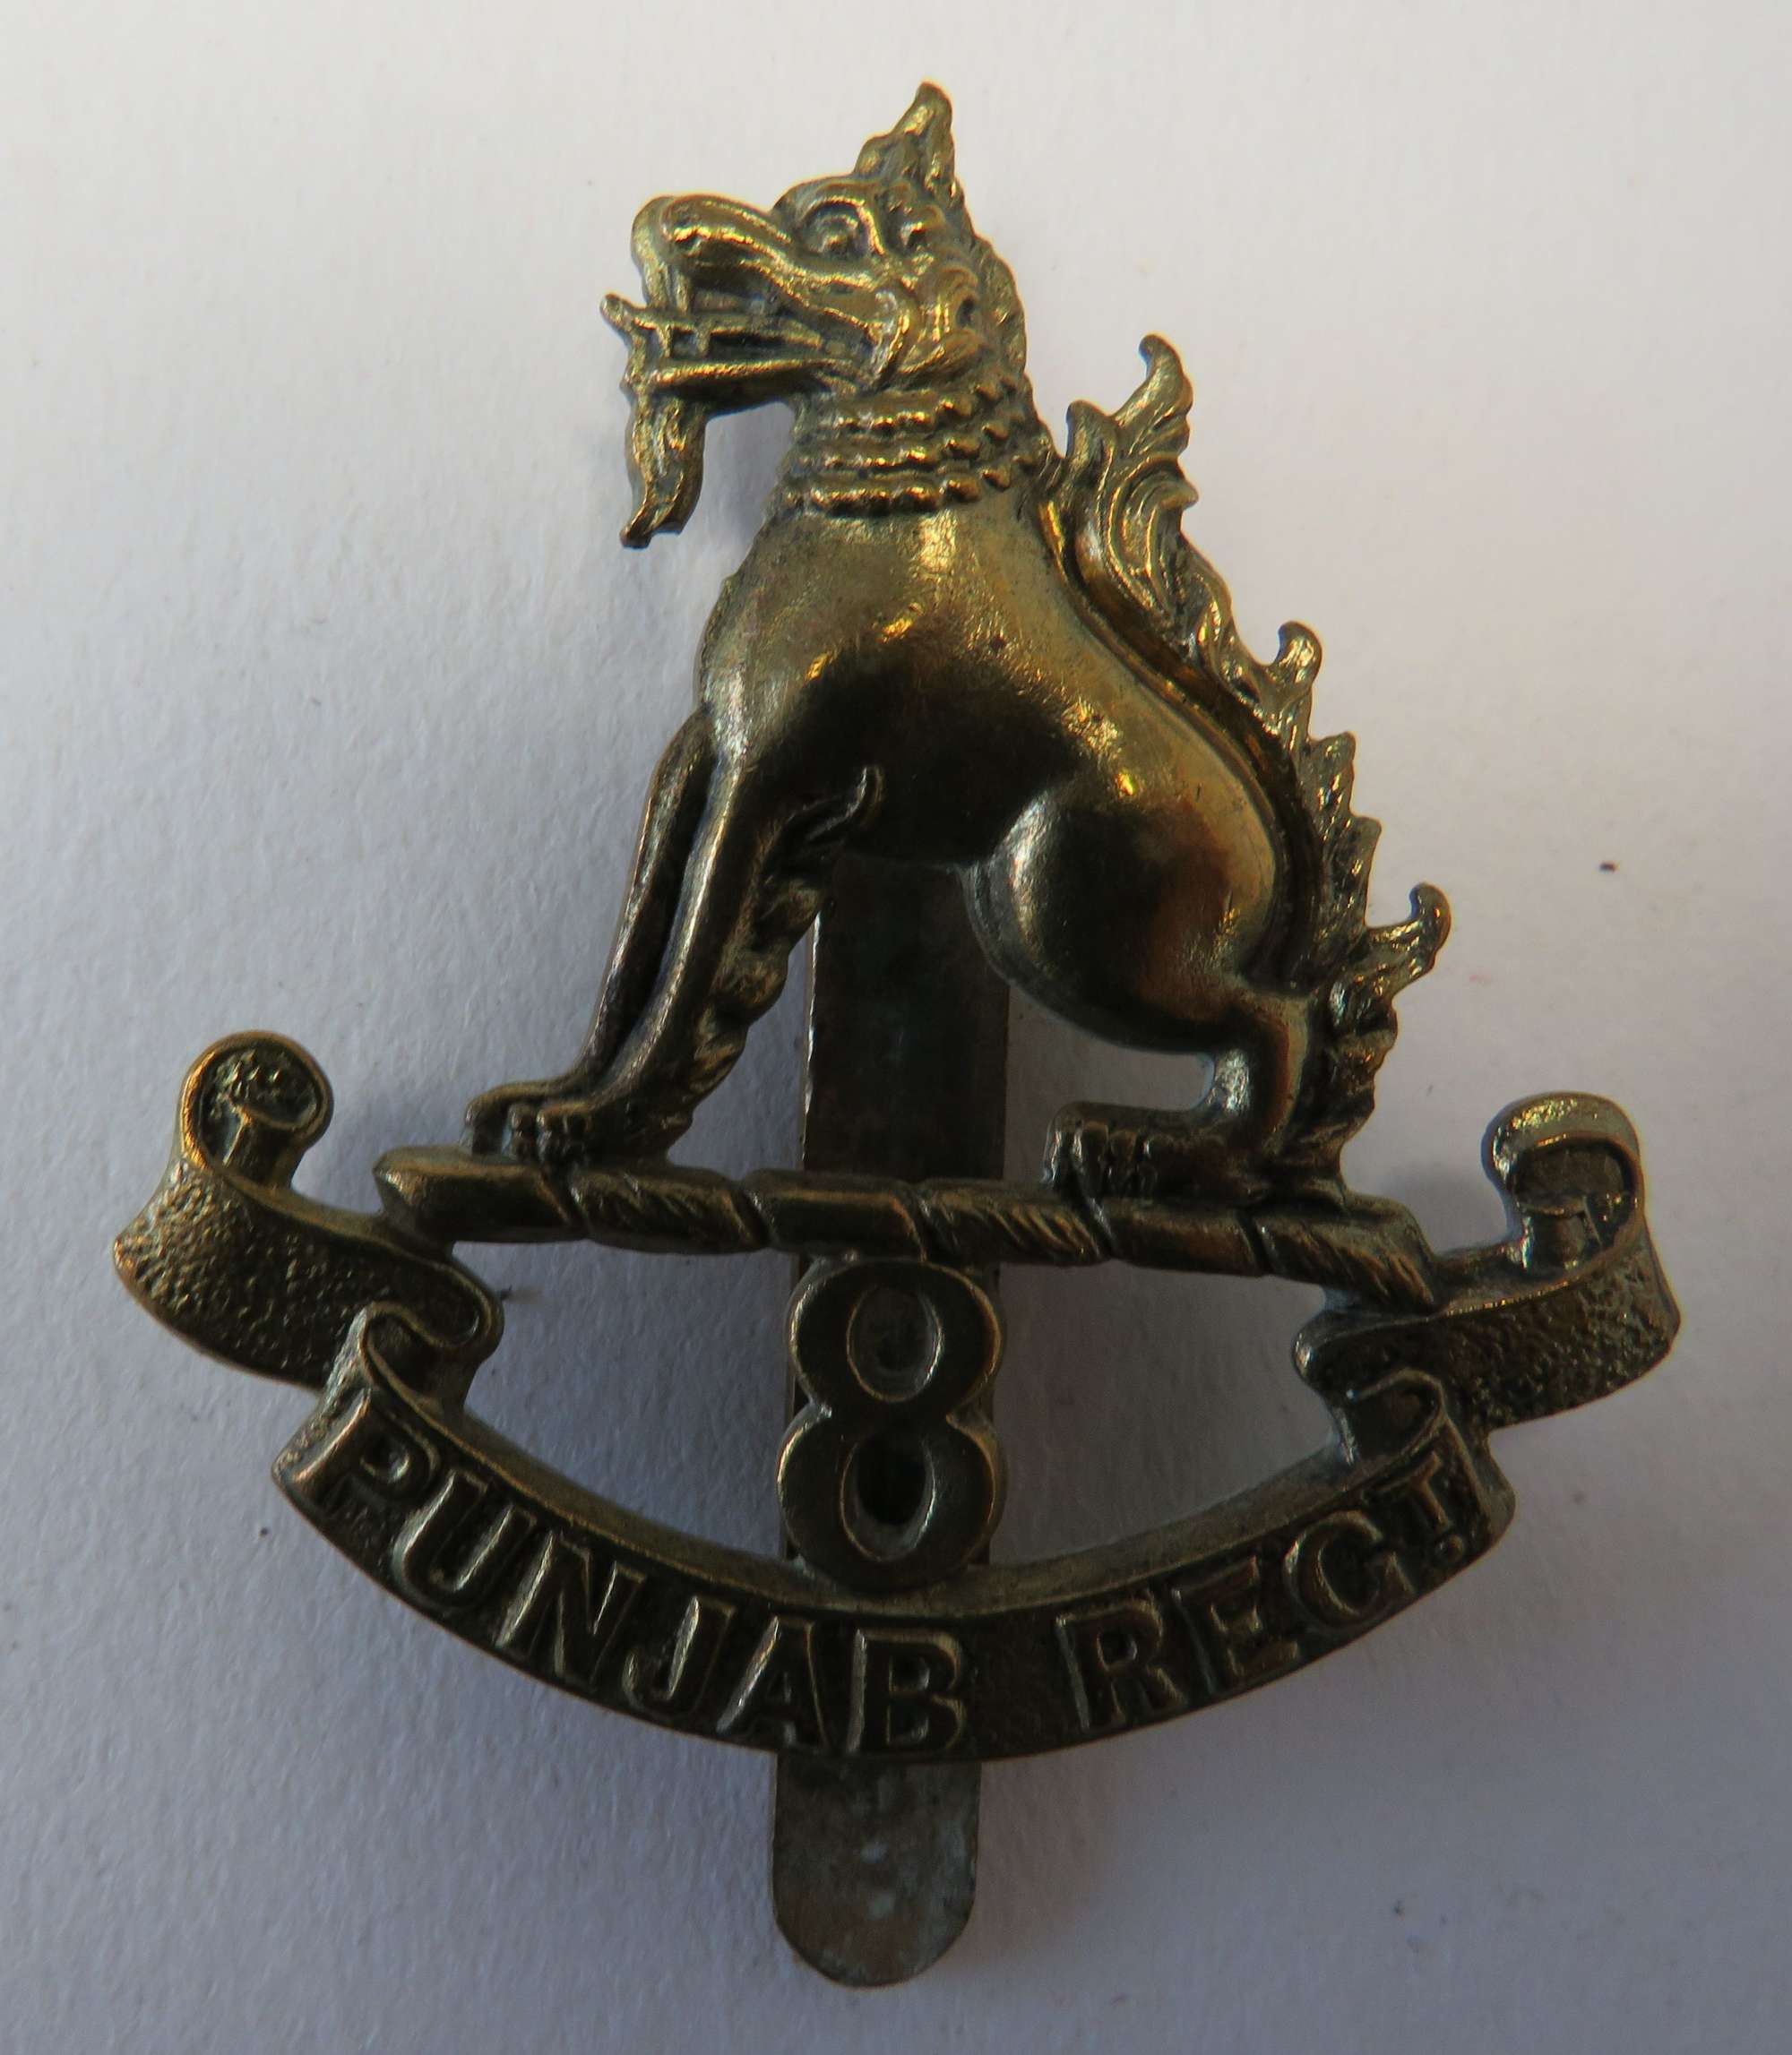 8th Punjab Regiment Cap Badge